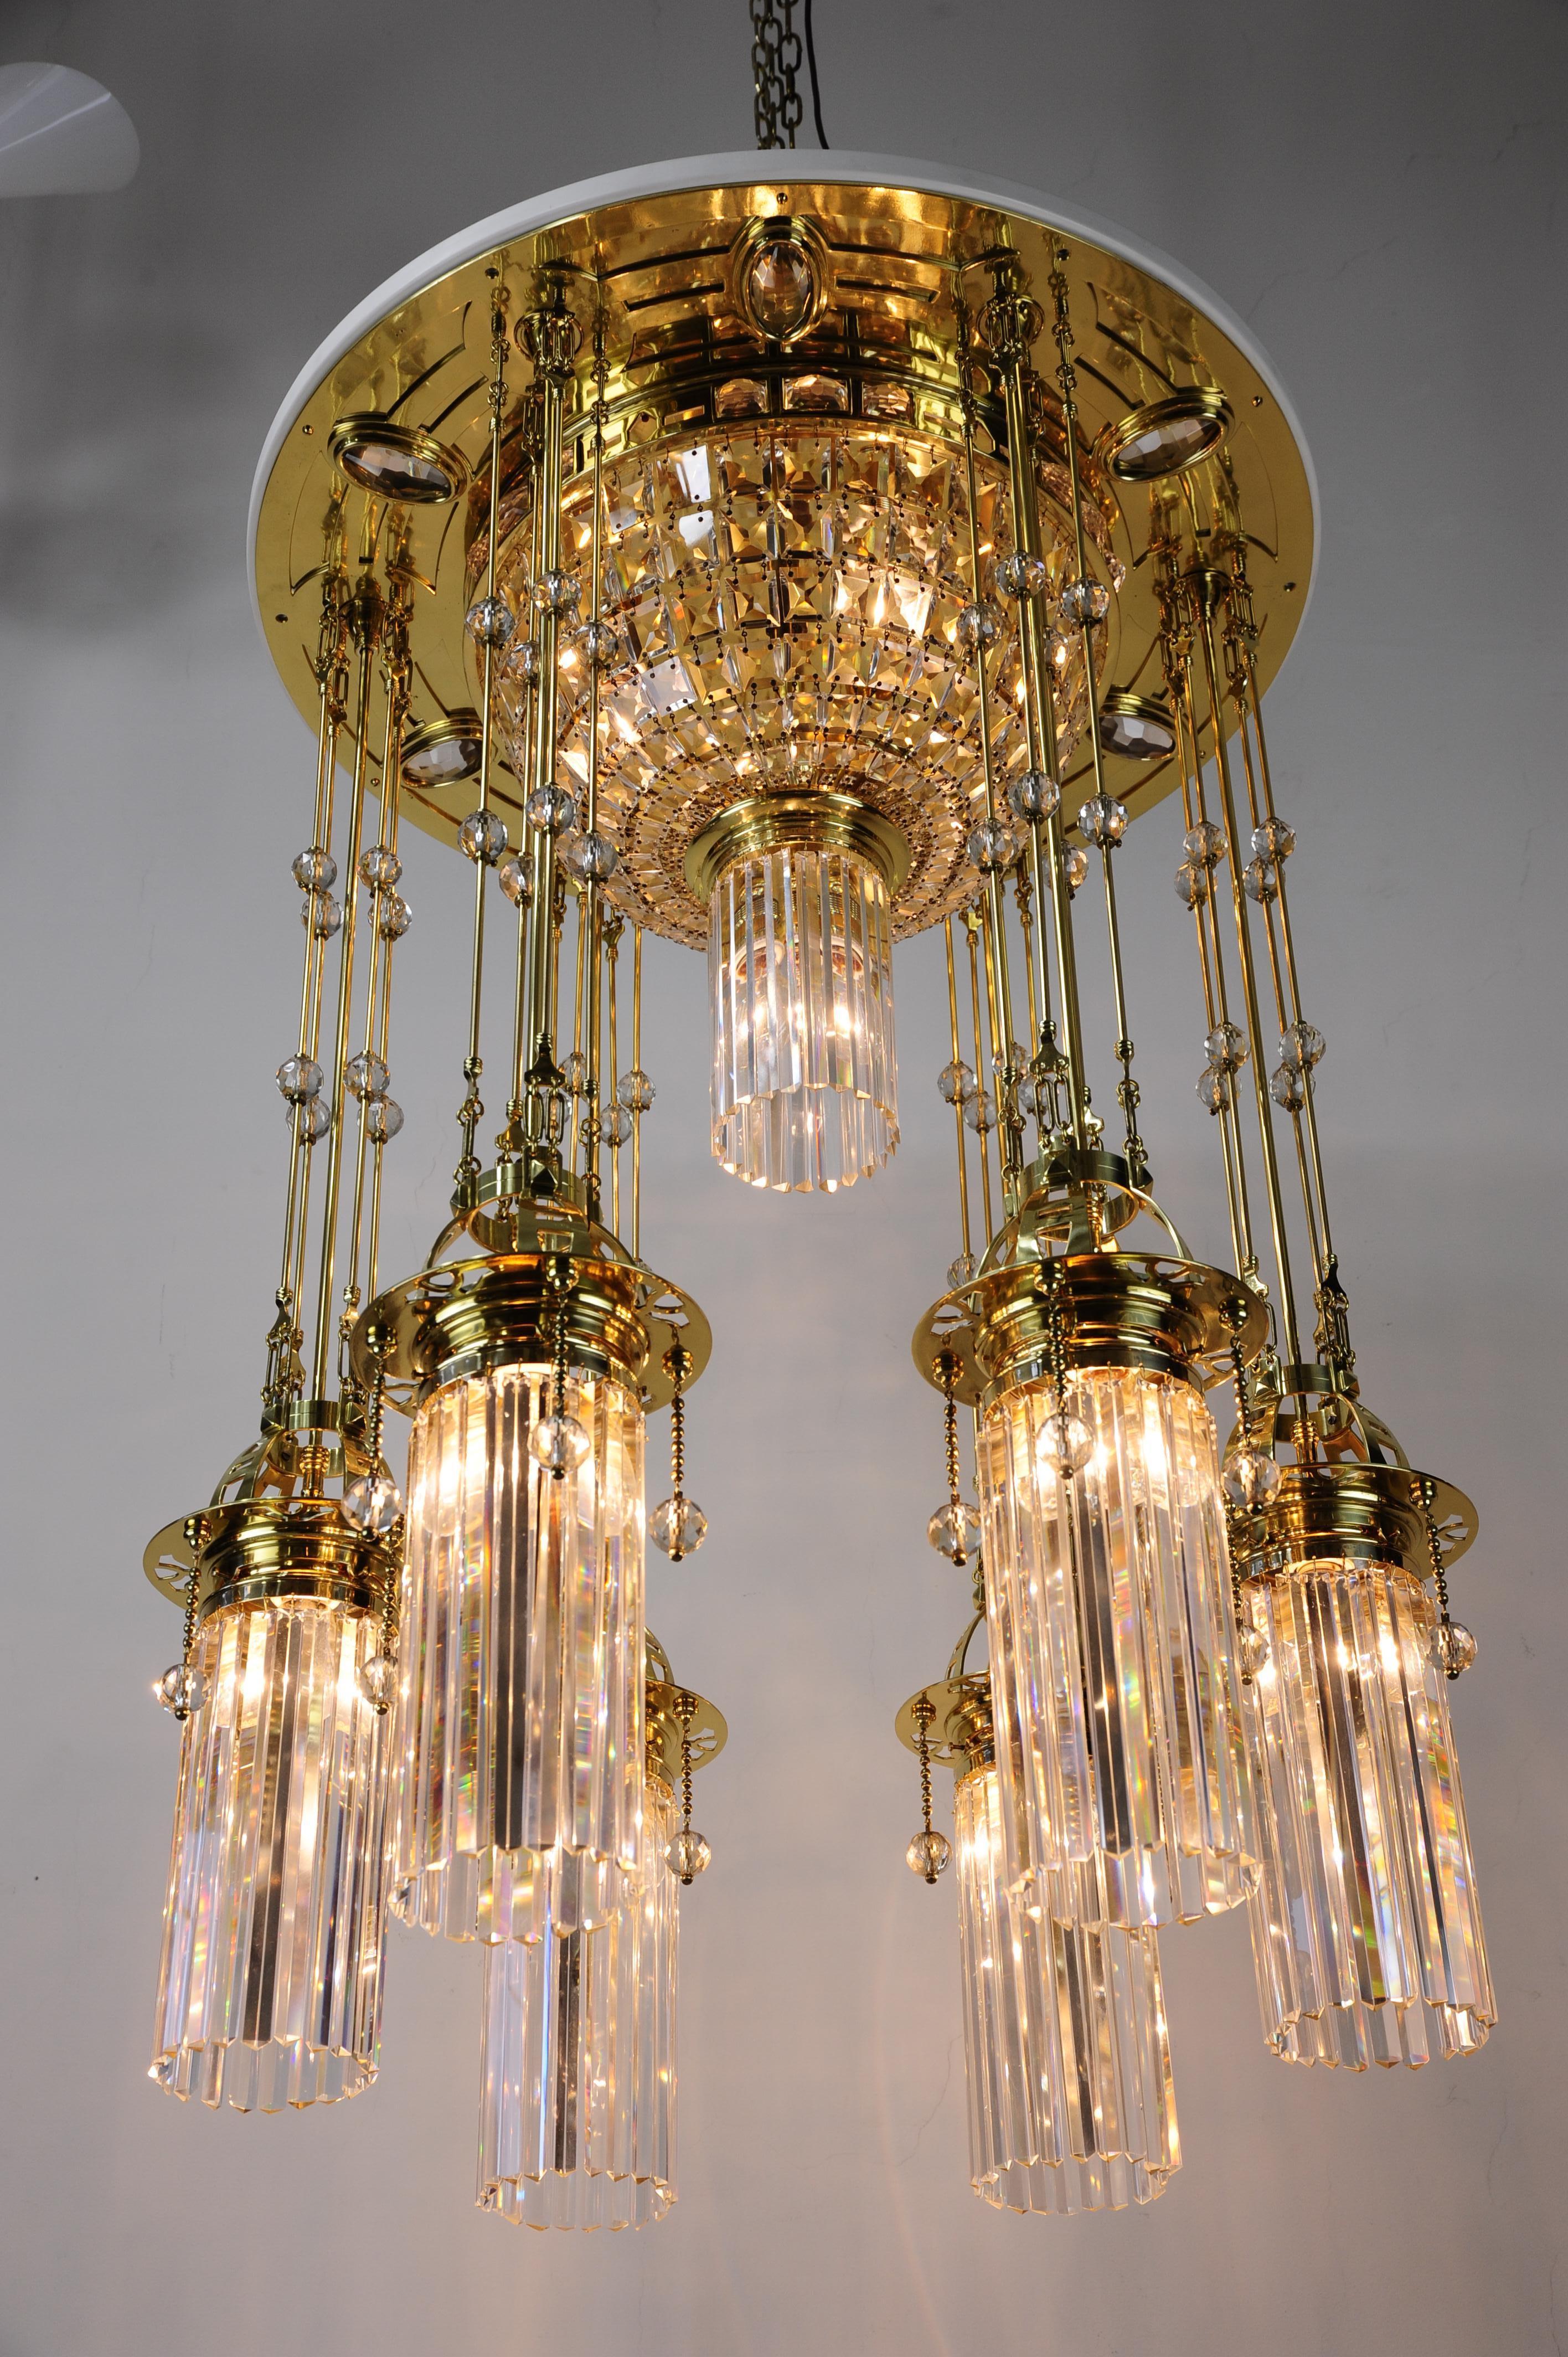 Prächtiger und riesiger Art-Deco-Lüster aus dem Wien der 1920er Jahre.
Poliertes Messing und einbrennlackiert.
Die Kristallteile des Kronleuchters sind original.
Der Kronleuchter wurde fachmännisch restauriert und das Kristall wurde sorgfältig